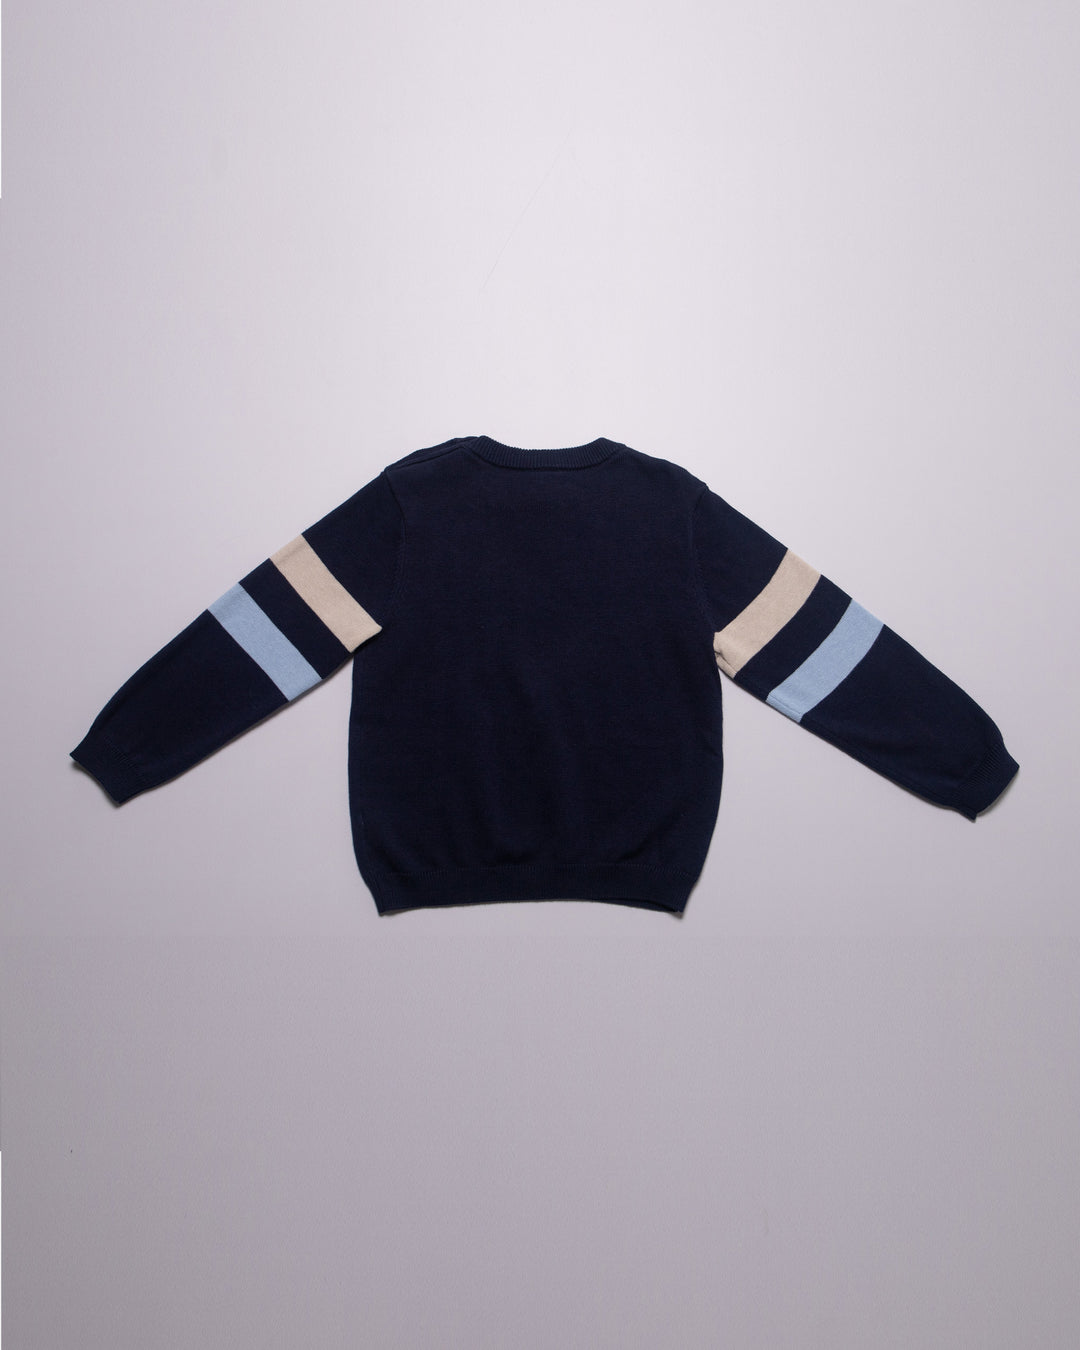 Sweater azul marino